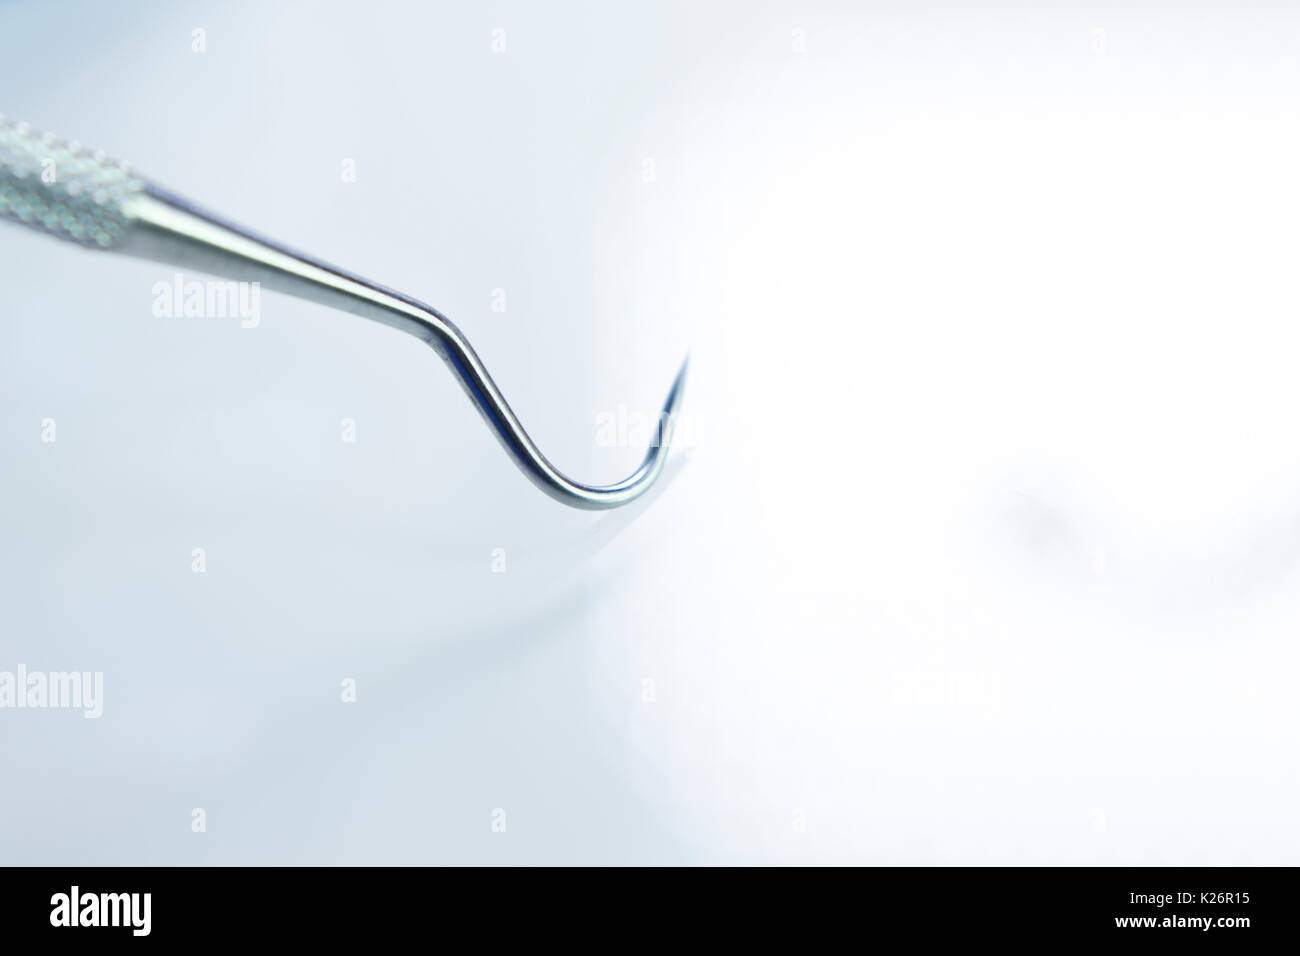 Le cure-dent dentaire dentiste l'équipement d'instrumentation de l'outil  pour nettoyer les dents et la plaque Photo Stock - Alamy